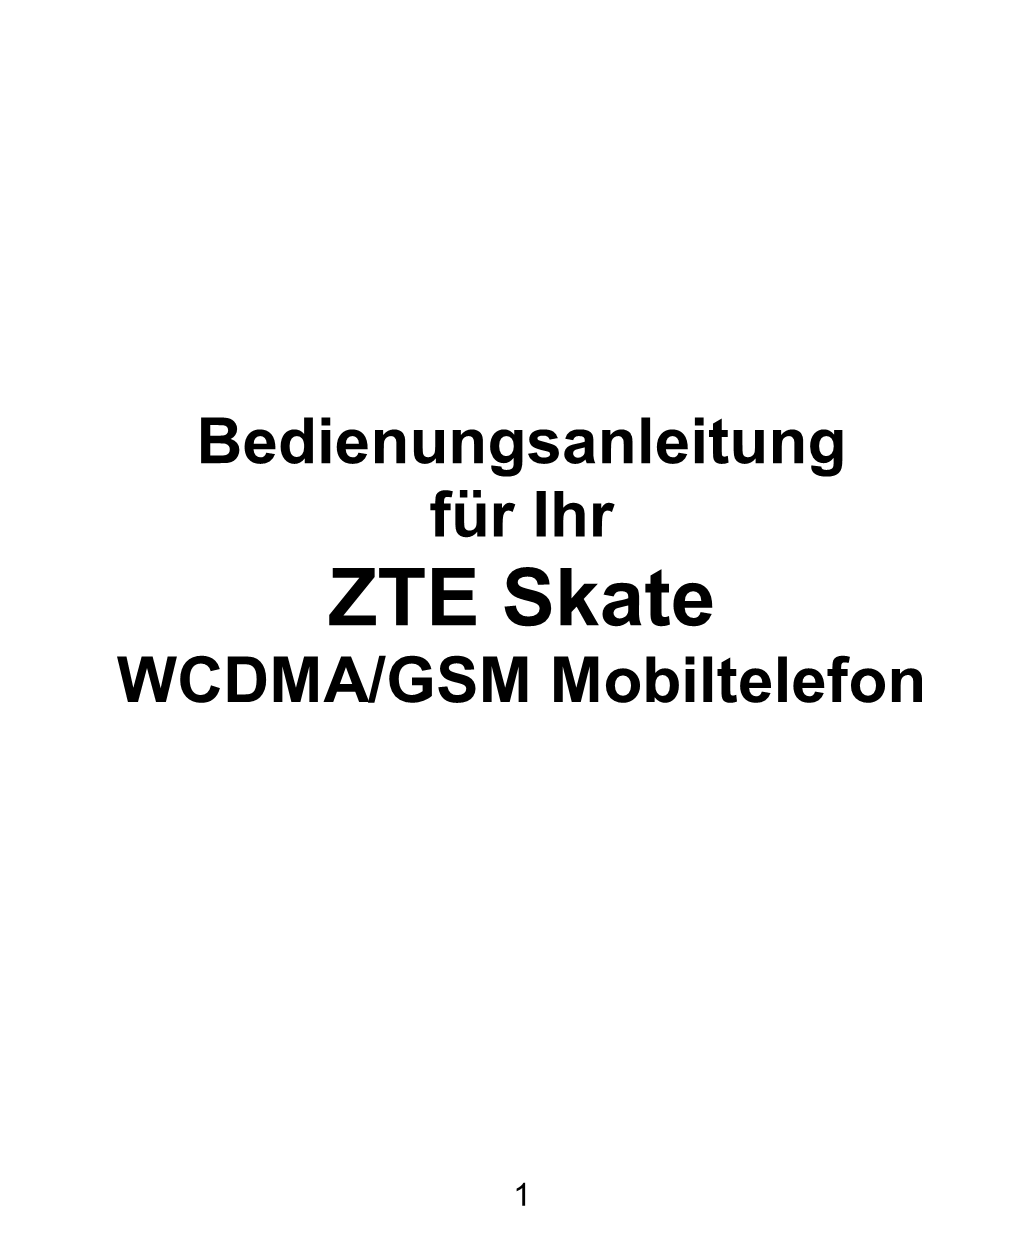 Bedienungsanleitung ZTE Skate